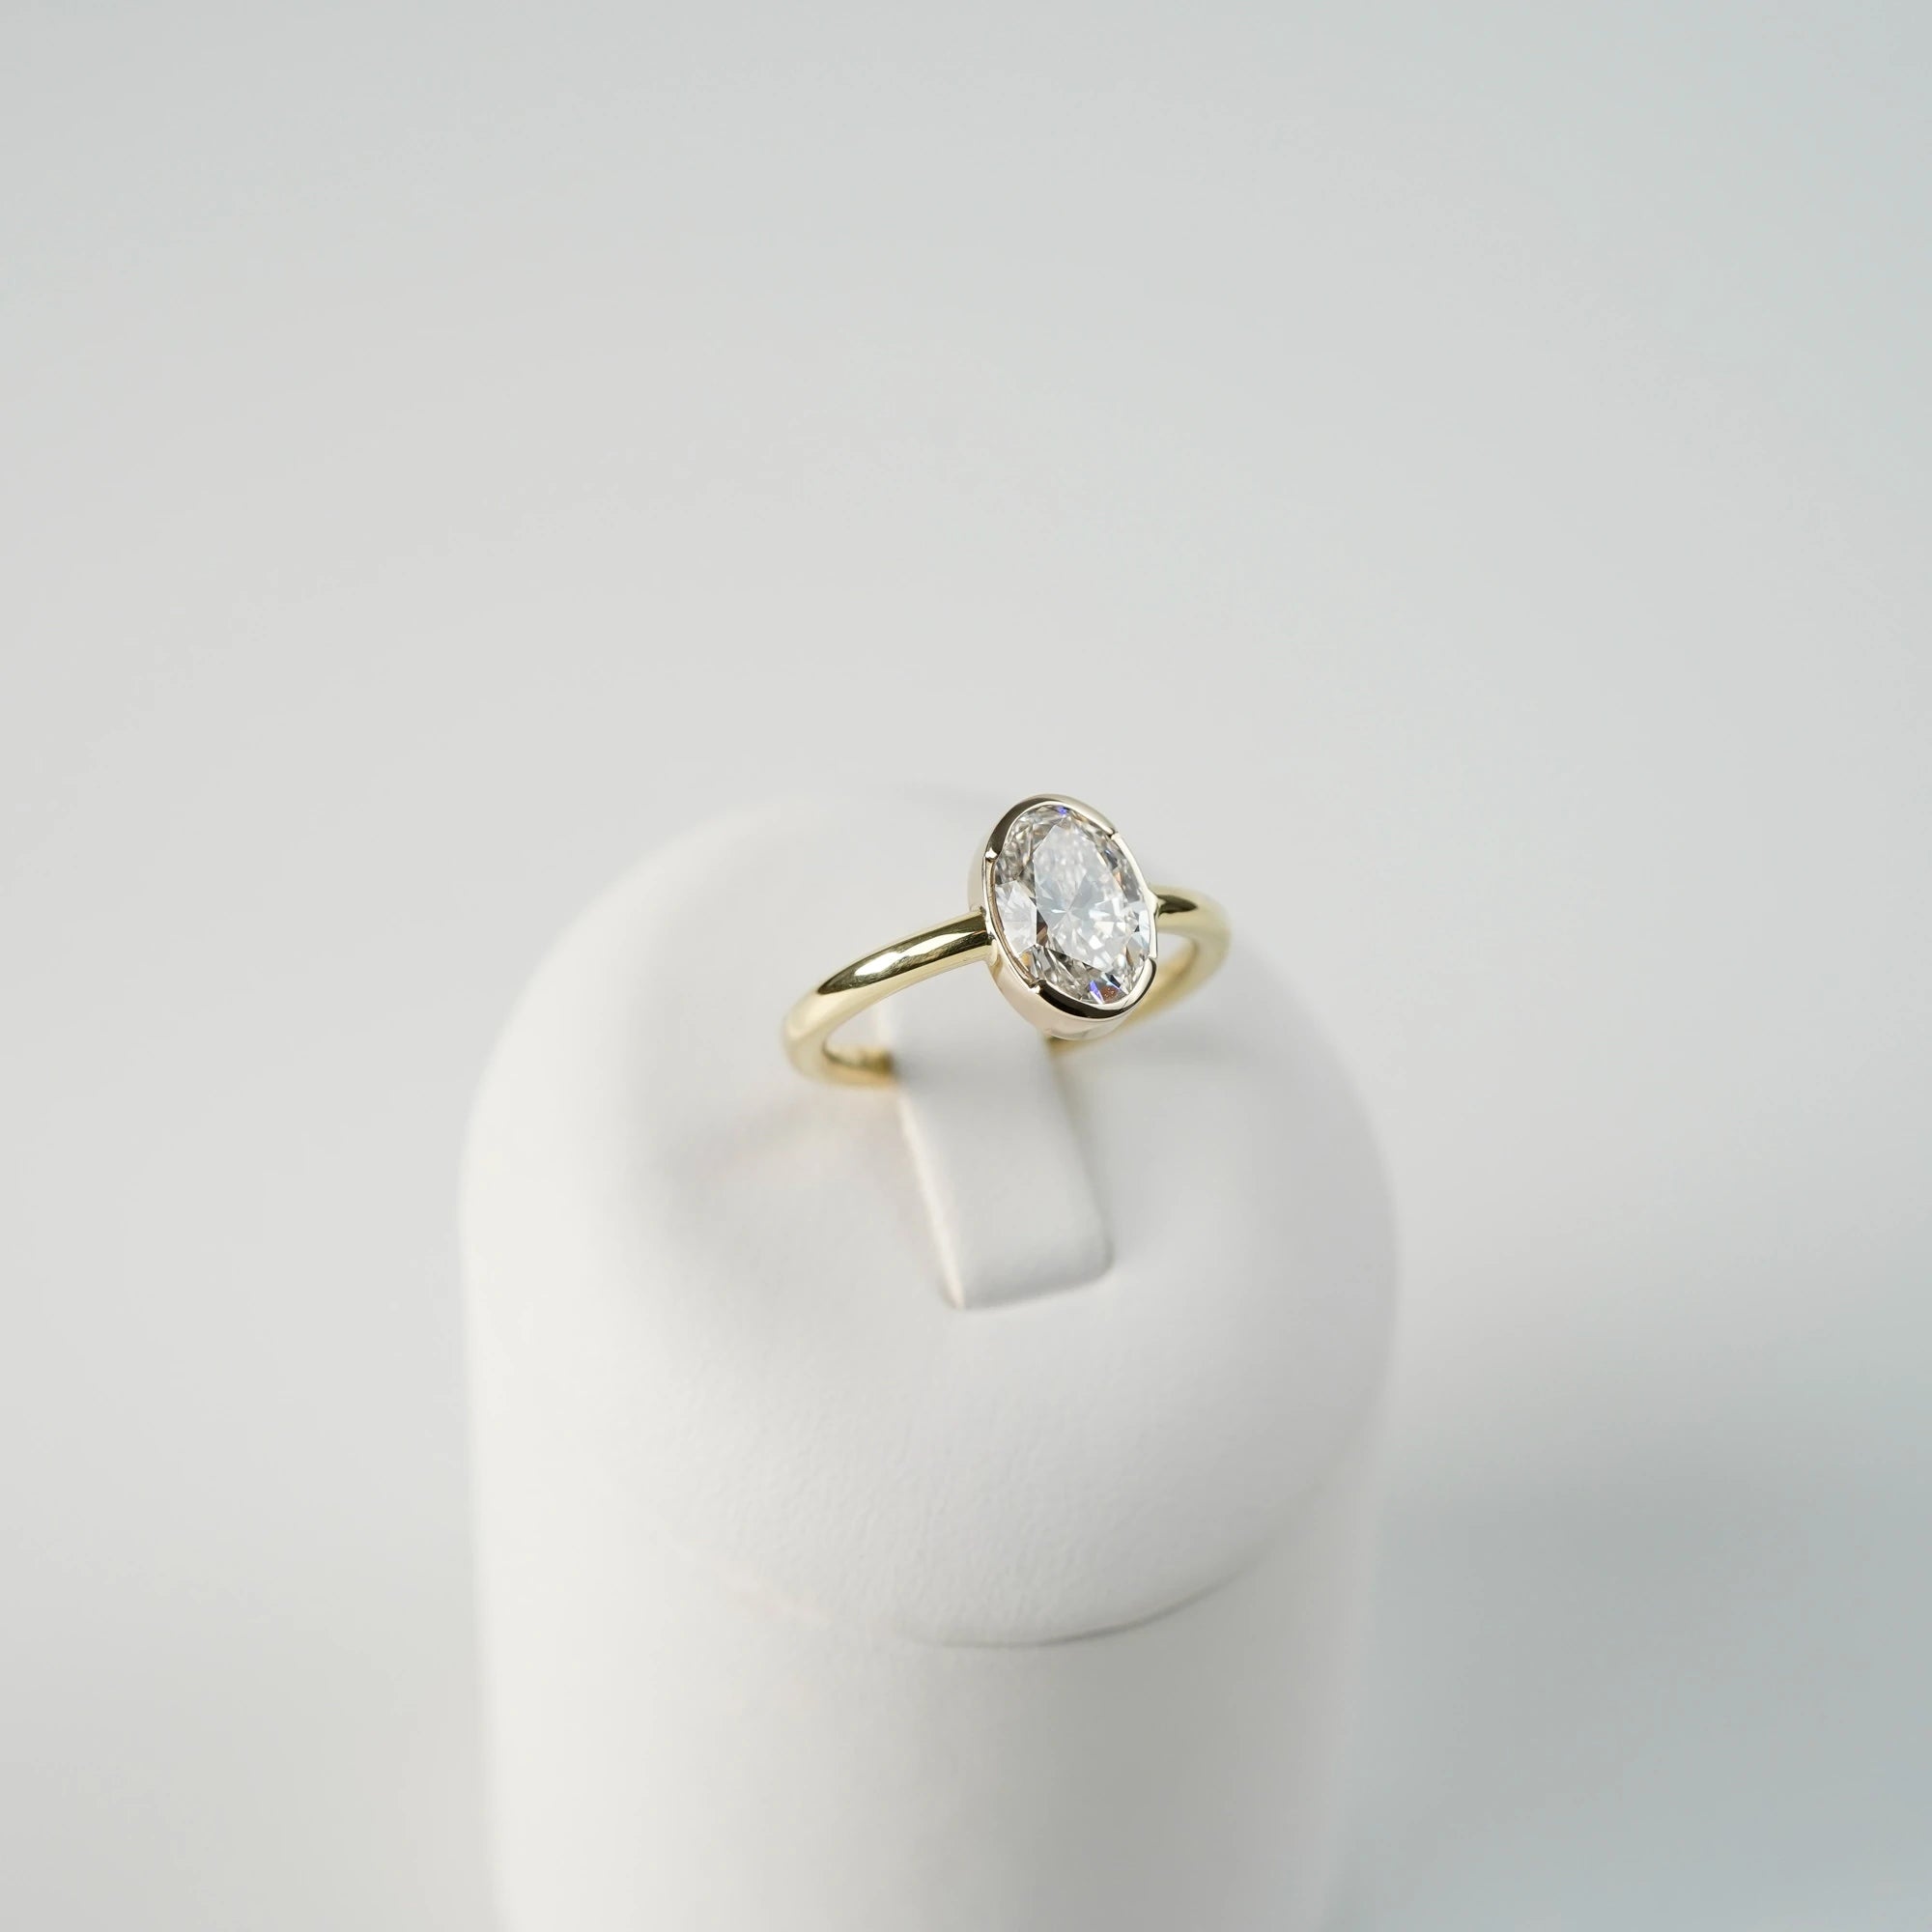 Produktfoto des in Gelbgold gefertigten Verlobungsring "Gleaming Love" mit einem großen Labor-Diamanten mit 2.03ct, während der Ring auf einem Ringständer steckt (leicht seitlicher Blickwinkel)